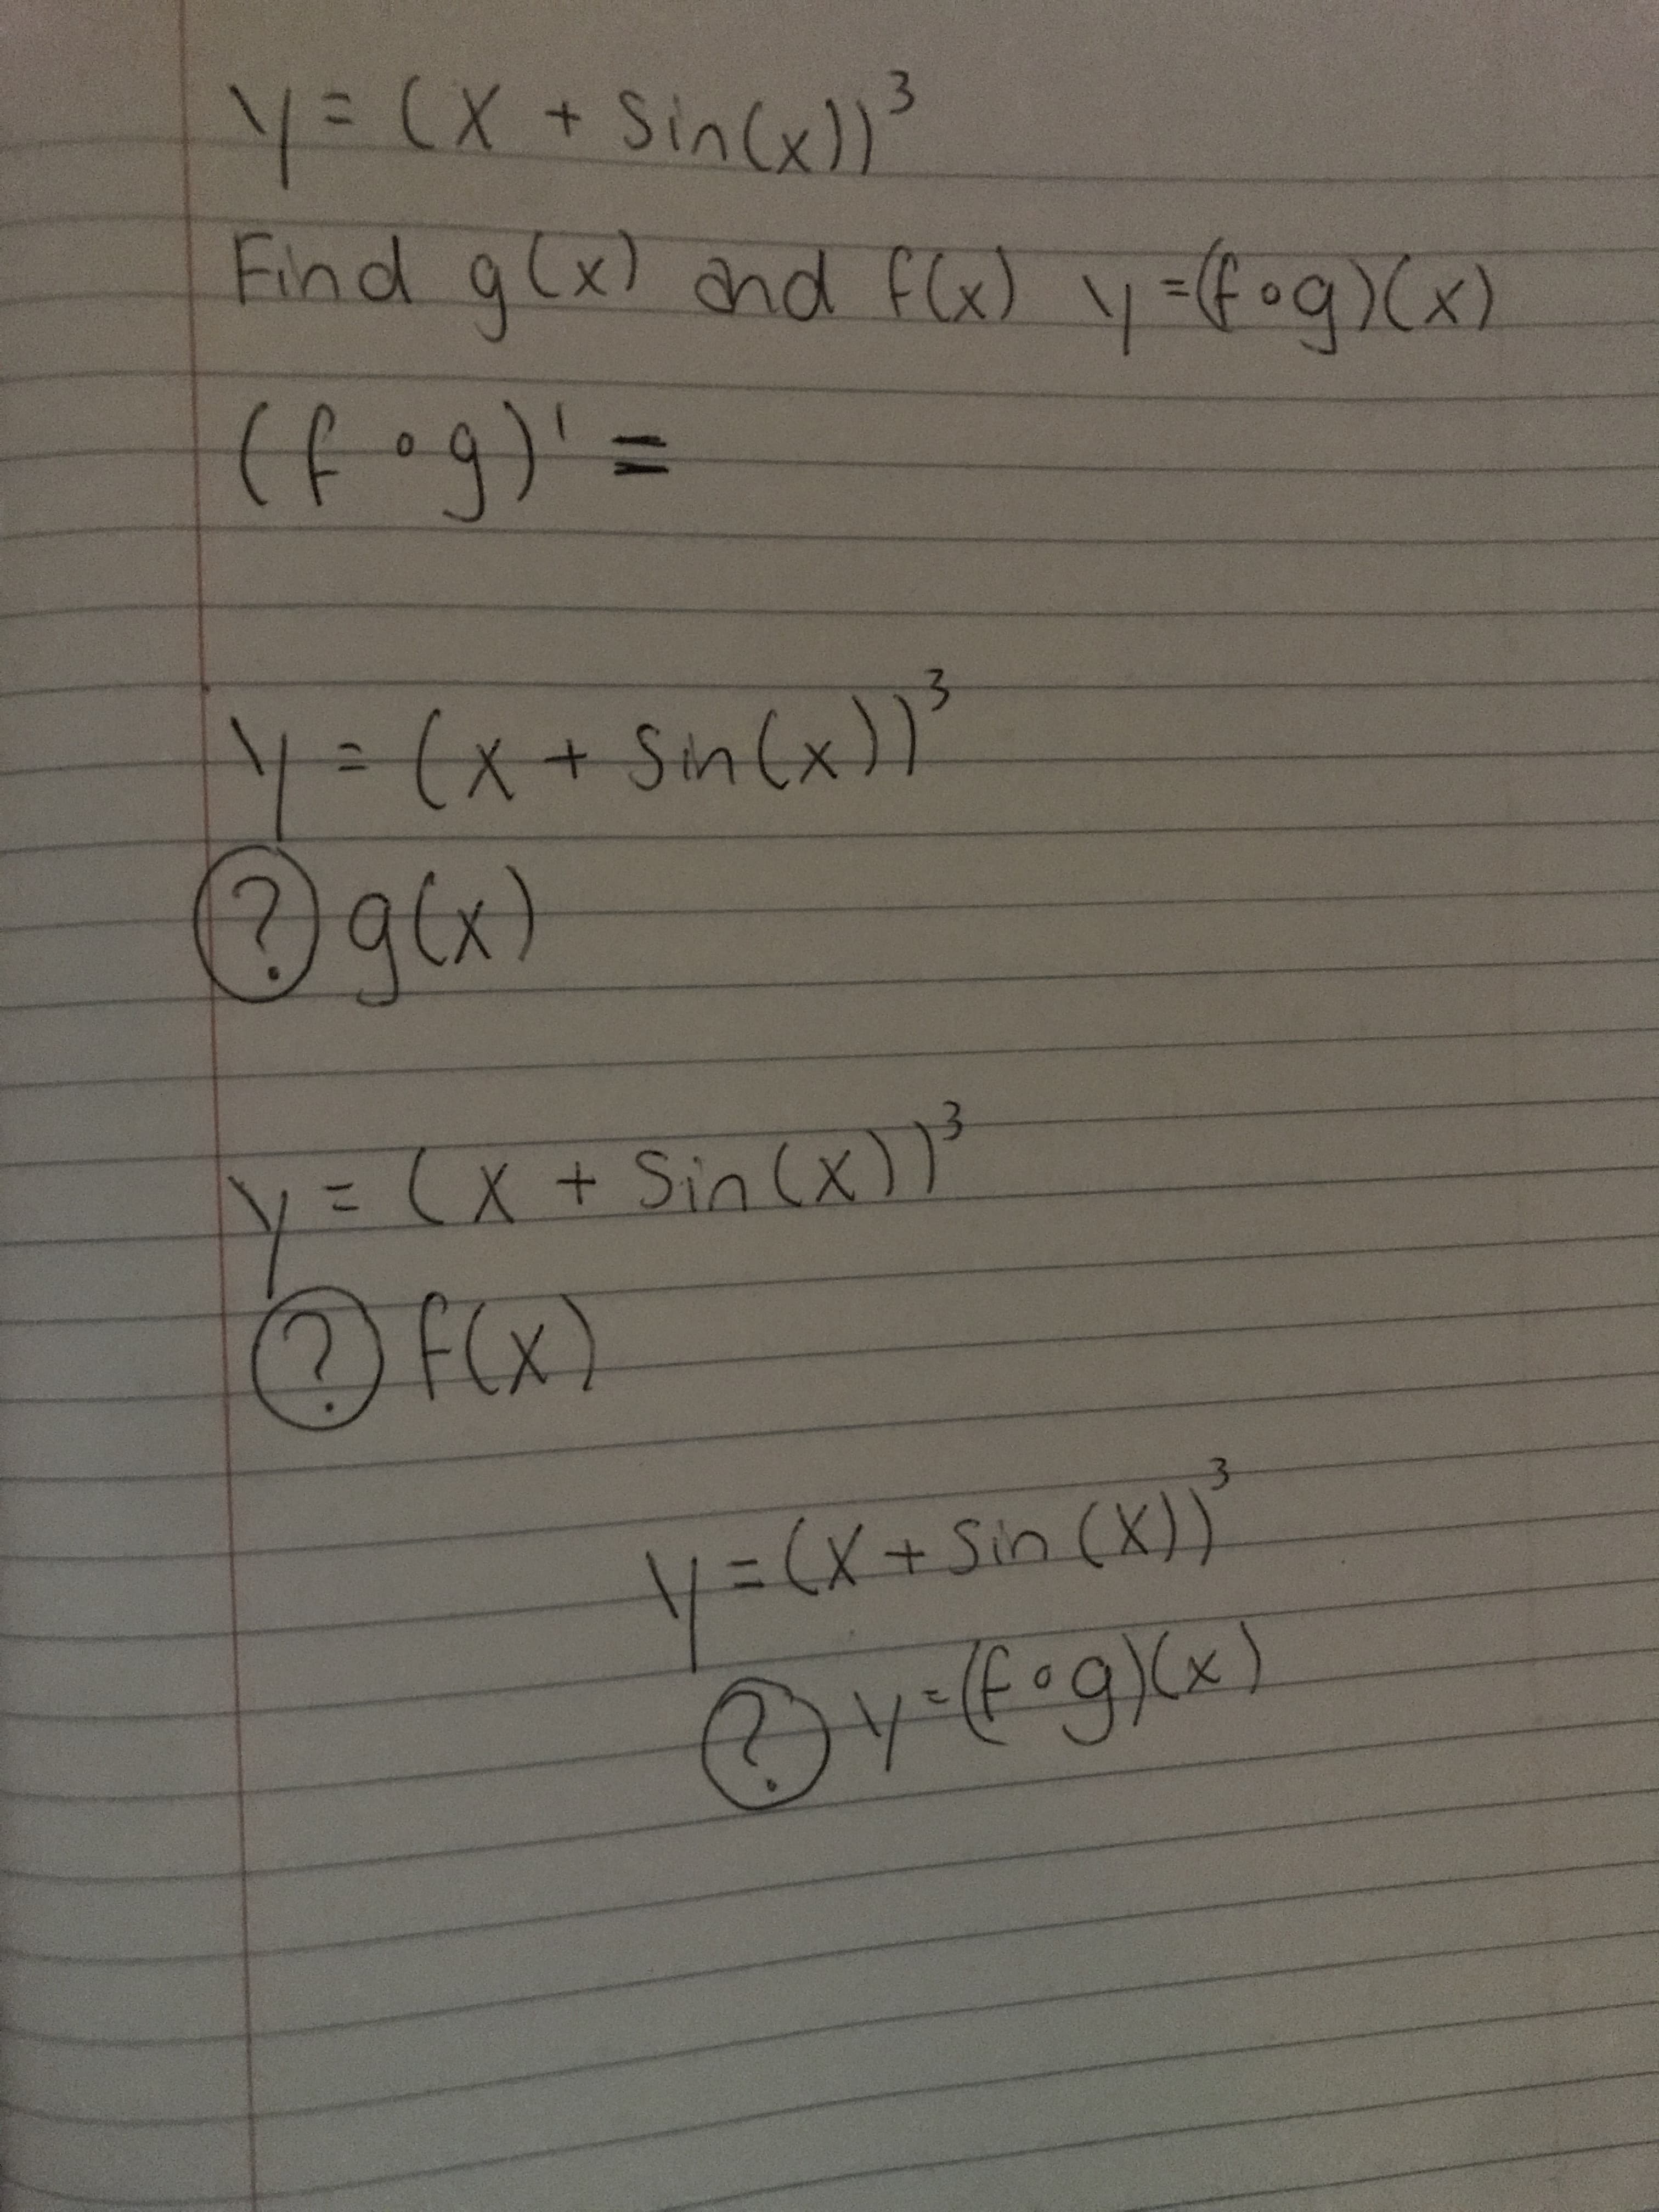 Y= (X+SinCe)?
Find a(x) and fG) y=foq> (x)
3.
(fog)'=
%3D
X+Sin(x)
gcx)
at
y '
( x))
X+ Sin (x.
%3D
f(x)
F(Xx)
:(x+Sin (X)
